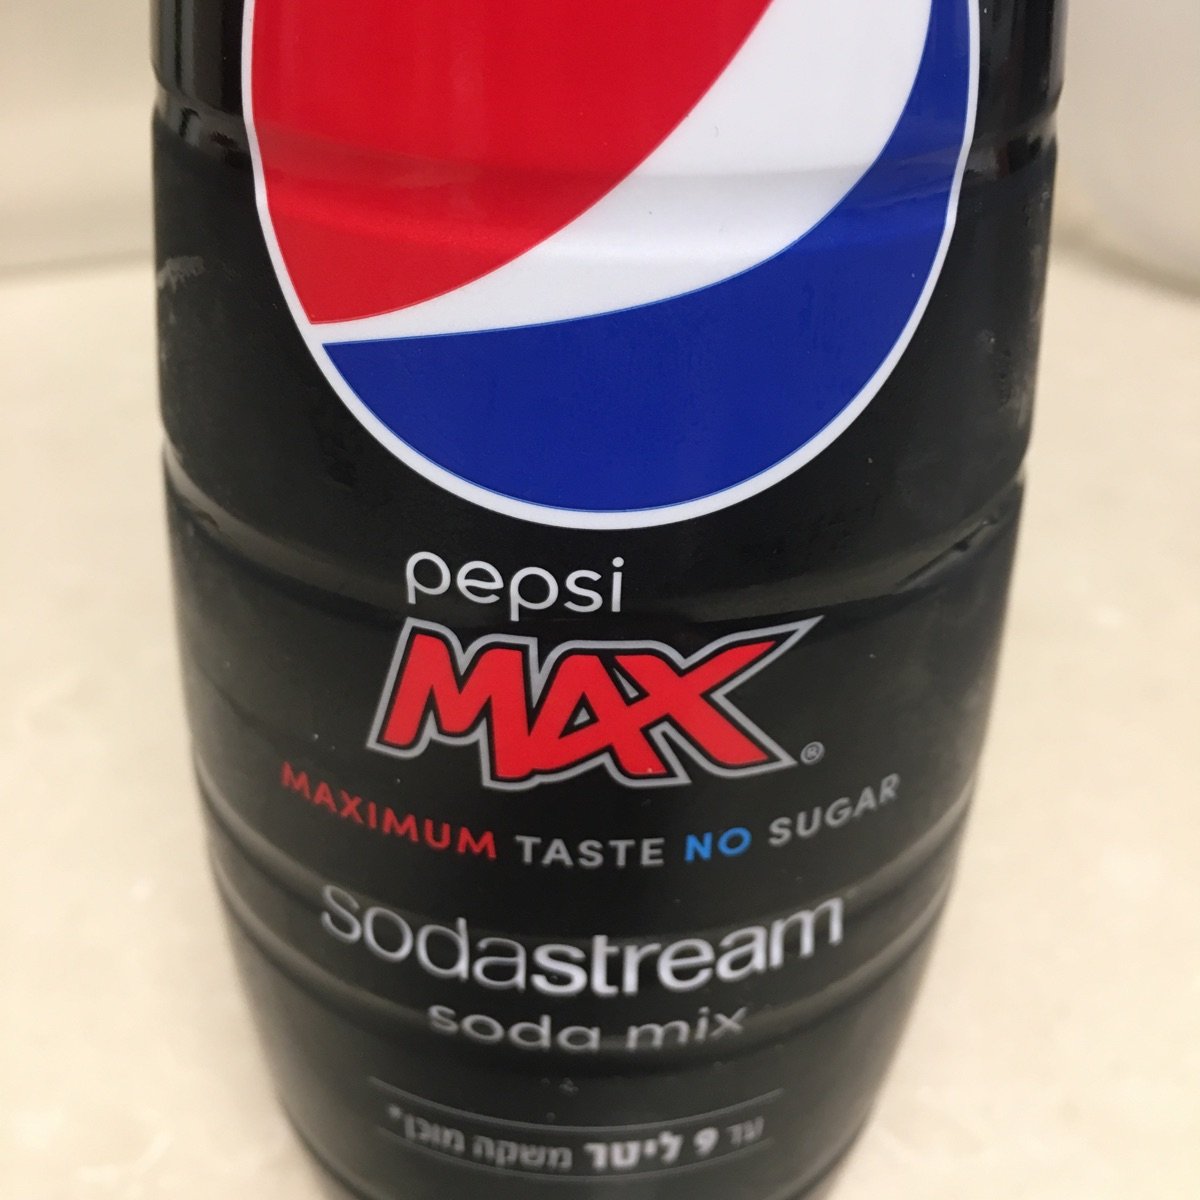 Avis sur Pepsi max sodastream soda mix par PepsiCo